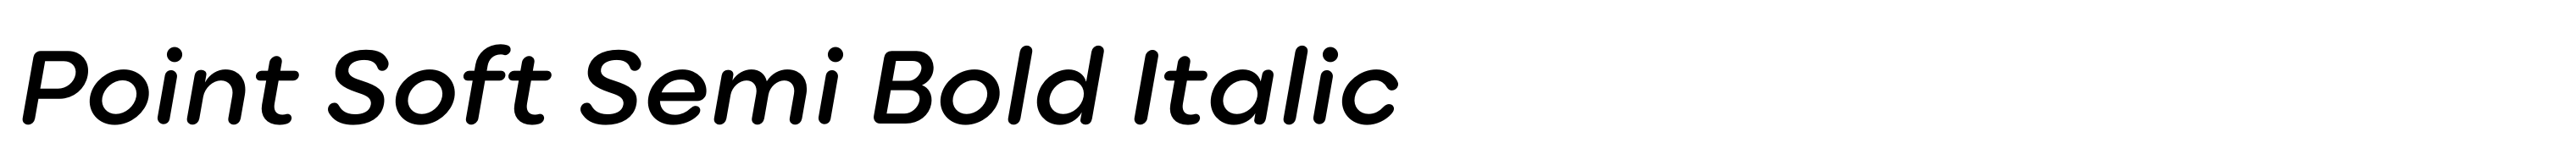 Point Soft Semi Bold Italic